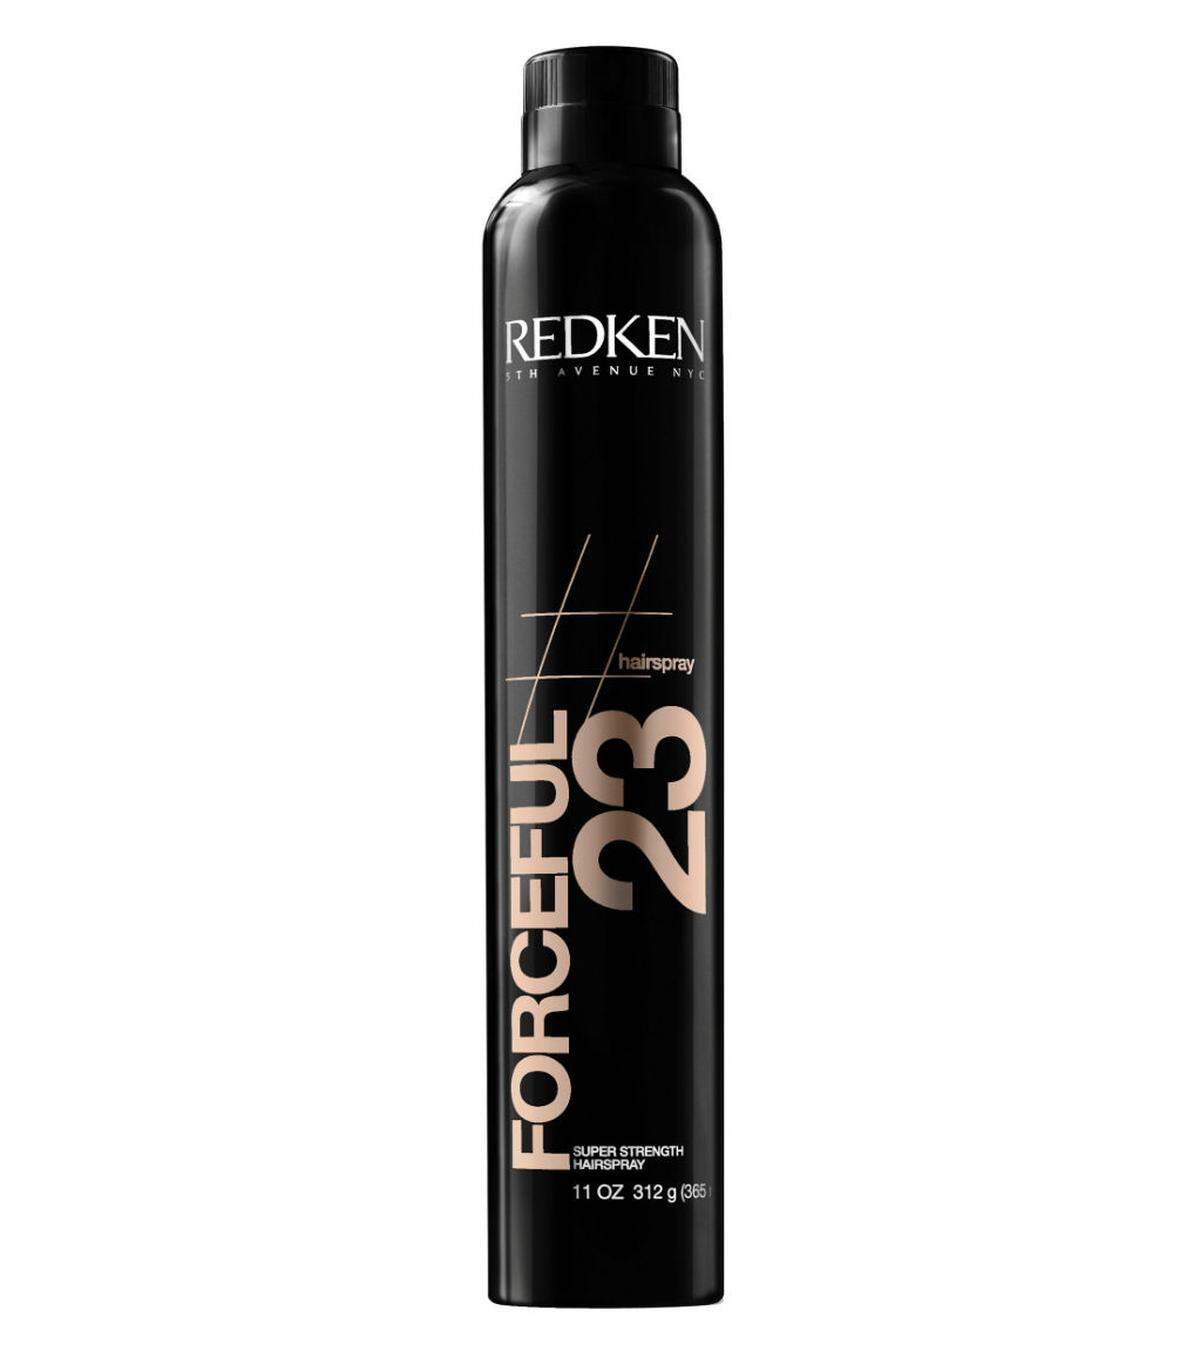 Der Redken-Haarspray Forceful soll dem Styling starken Halt verleihen, ohne zu verkleben, ca. 23 Euro. 